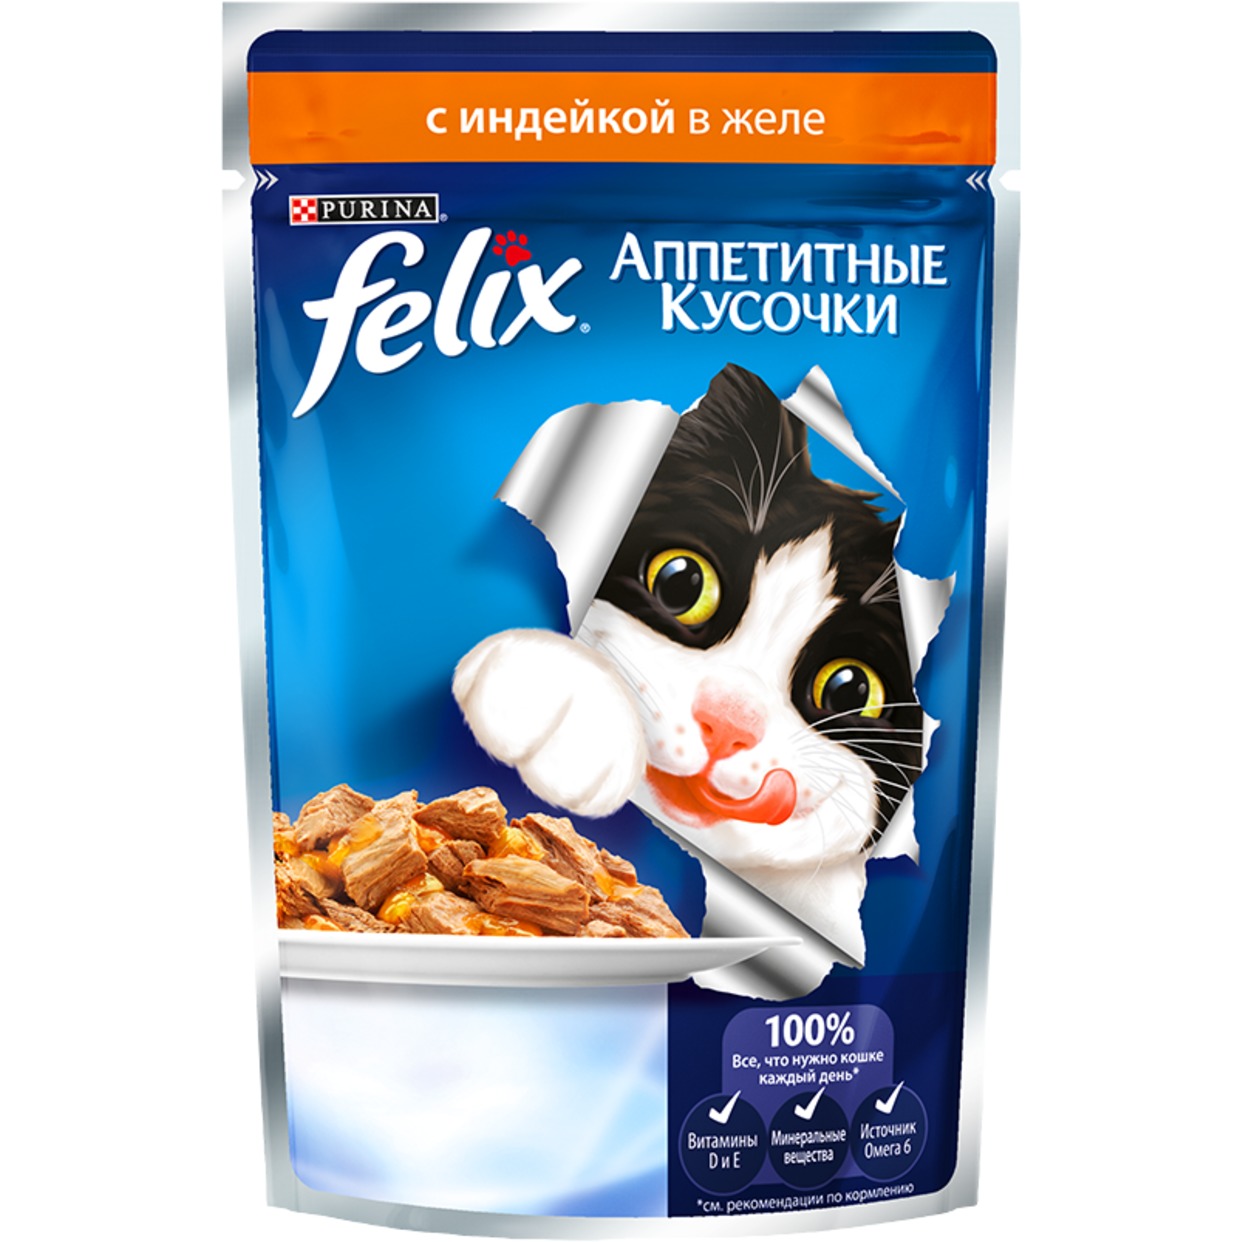 Корм для кошек Felix Аппетитные кусочки с индейкой в желе 85 г по акции в Пятерочке